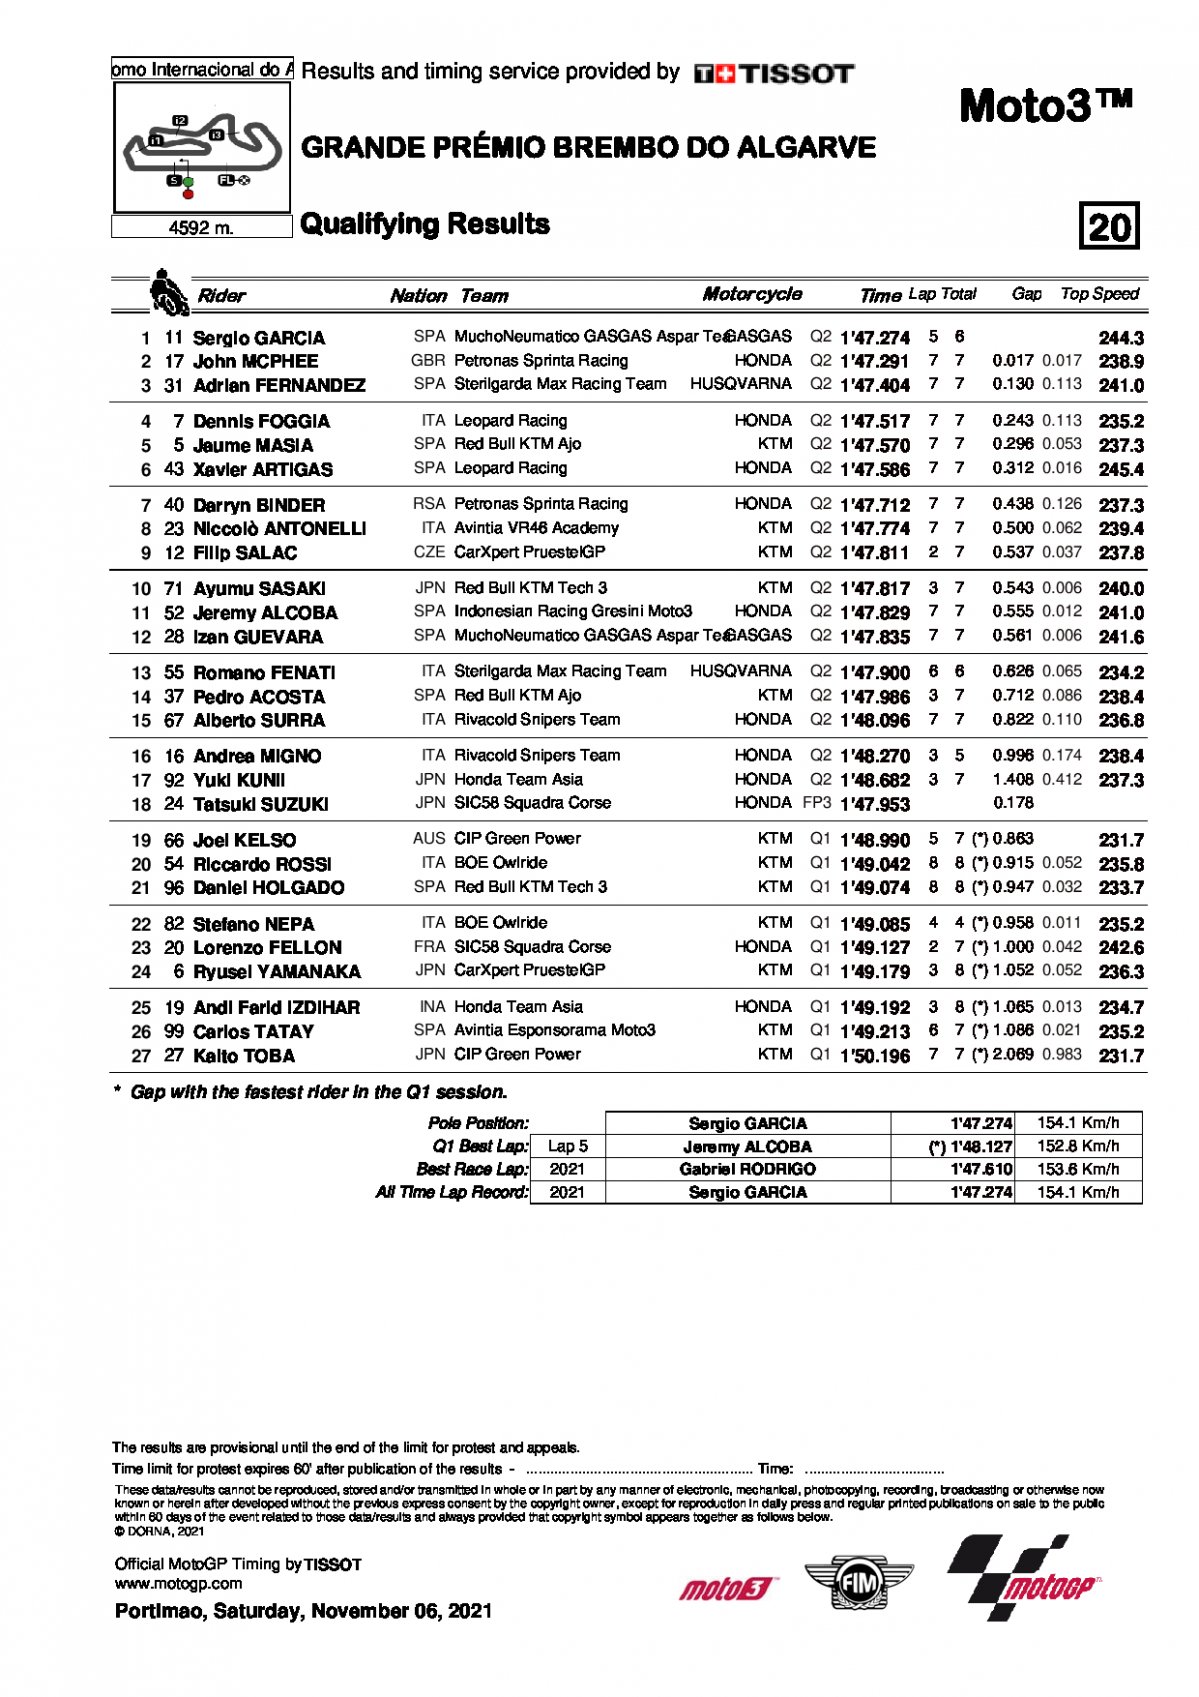 Результаты квалификации Гран-При Альгарве, Moto3 (6/11/2021)